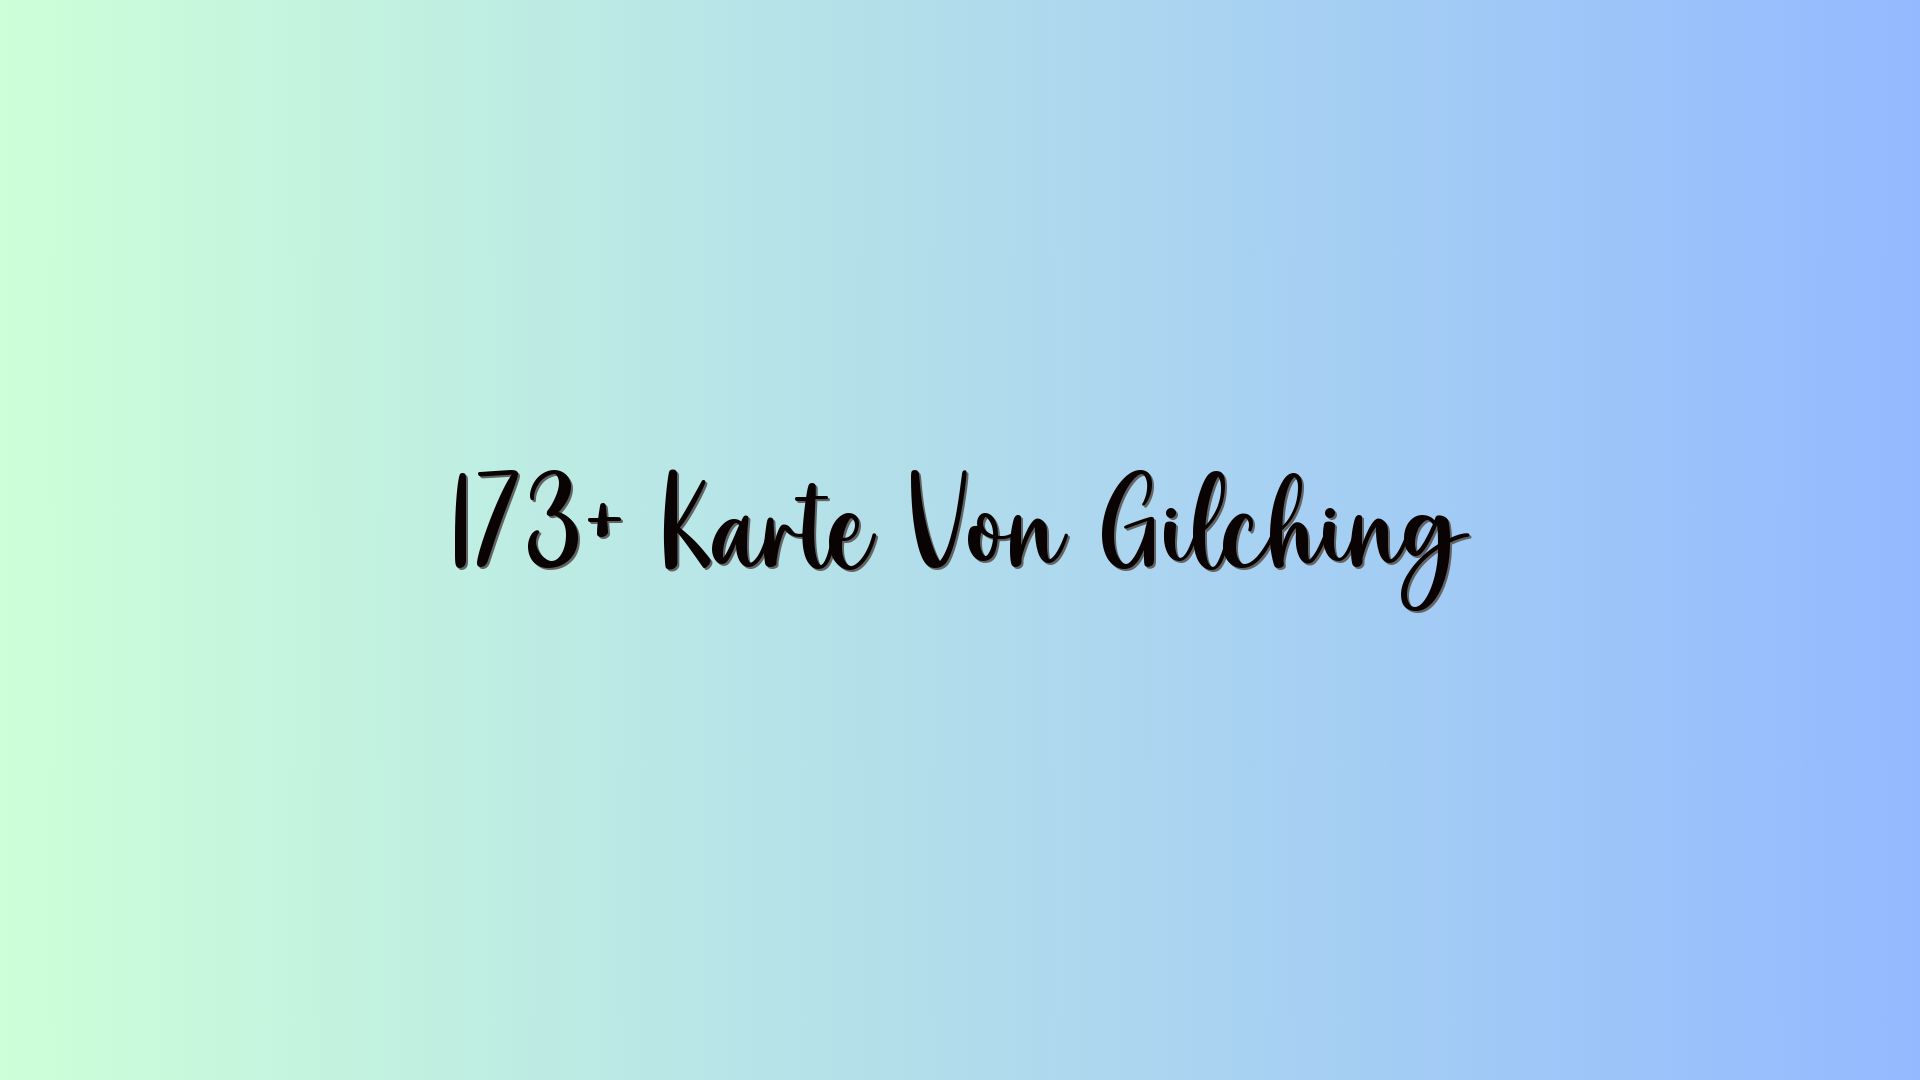 173+ Karte Von Gilching